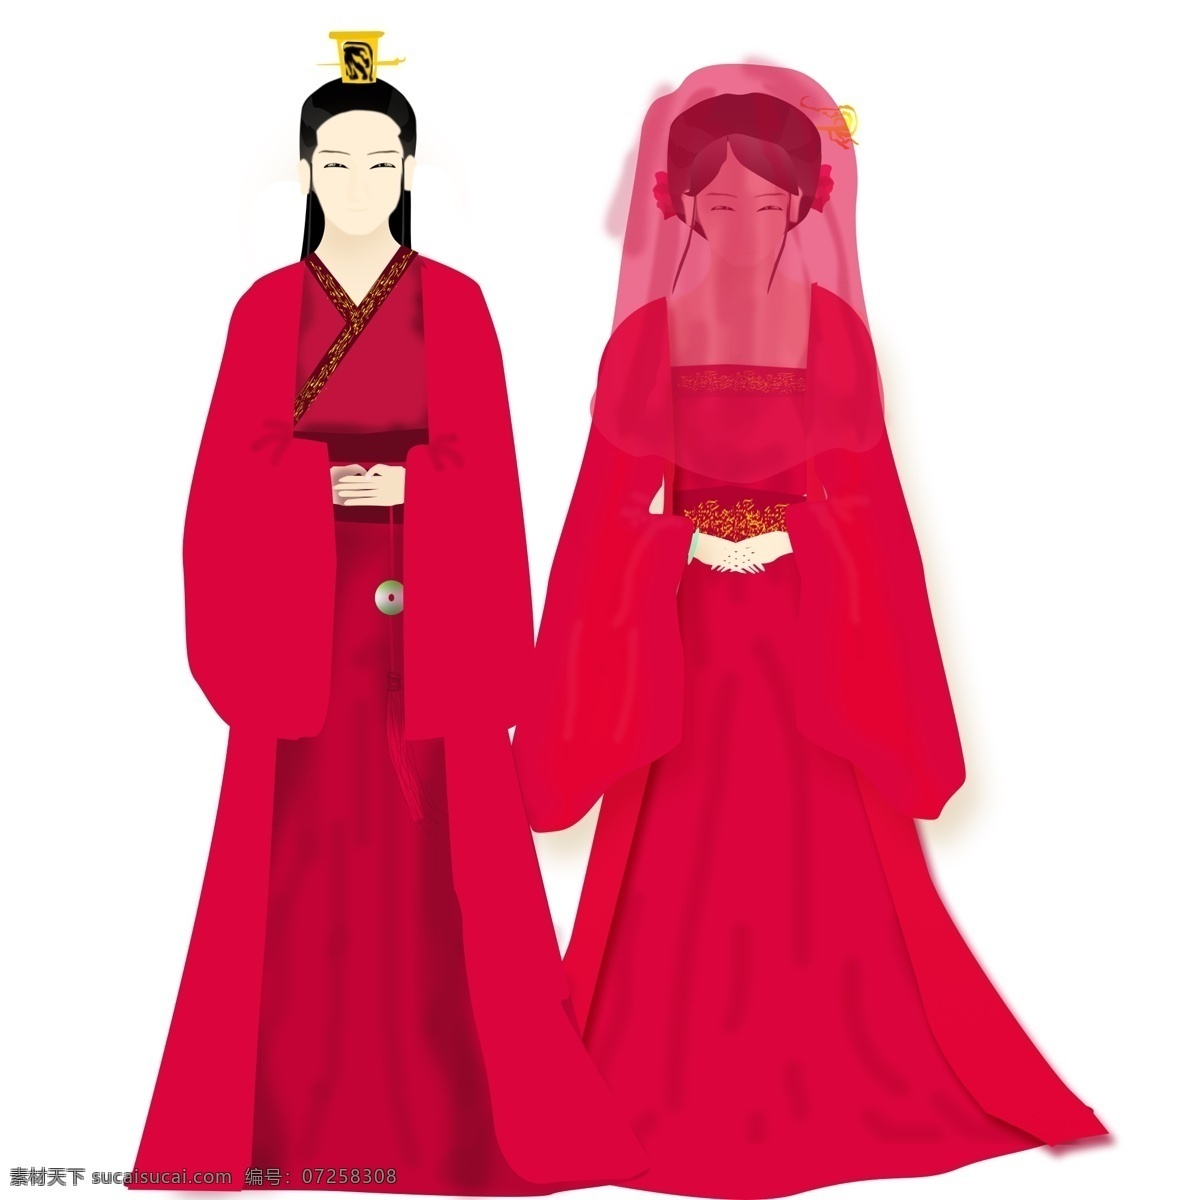 中外 婚礼 元素 古装 中式 结婚 中式结婚 新郎新娘 ps系列